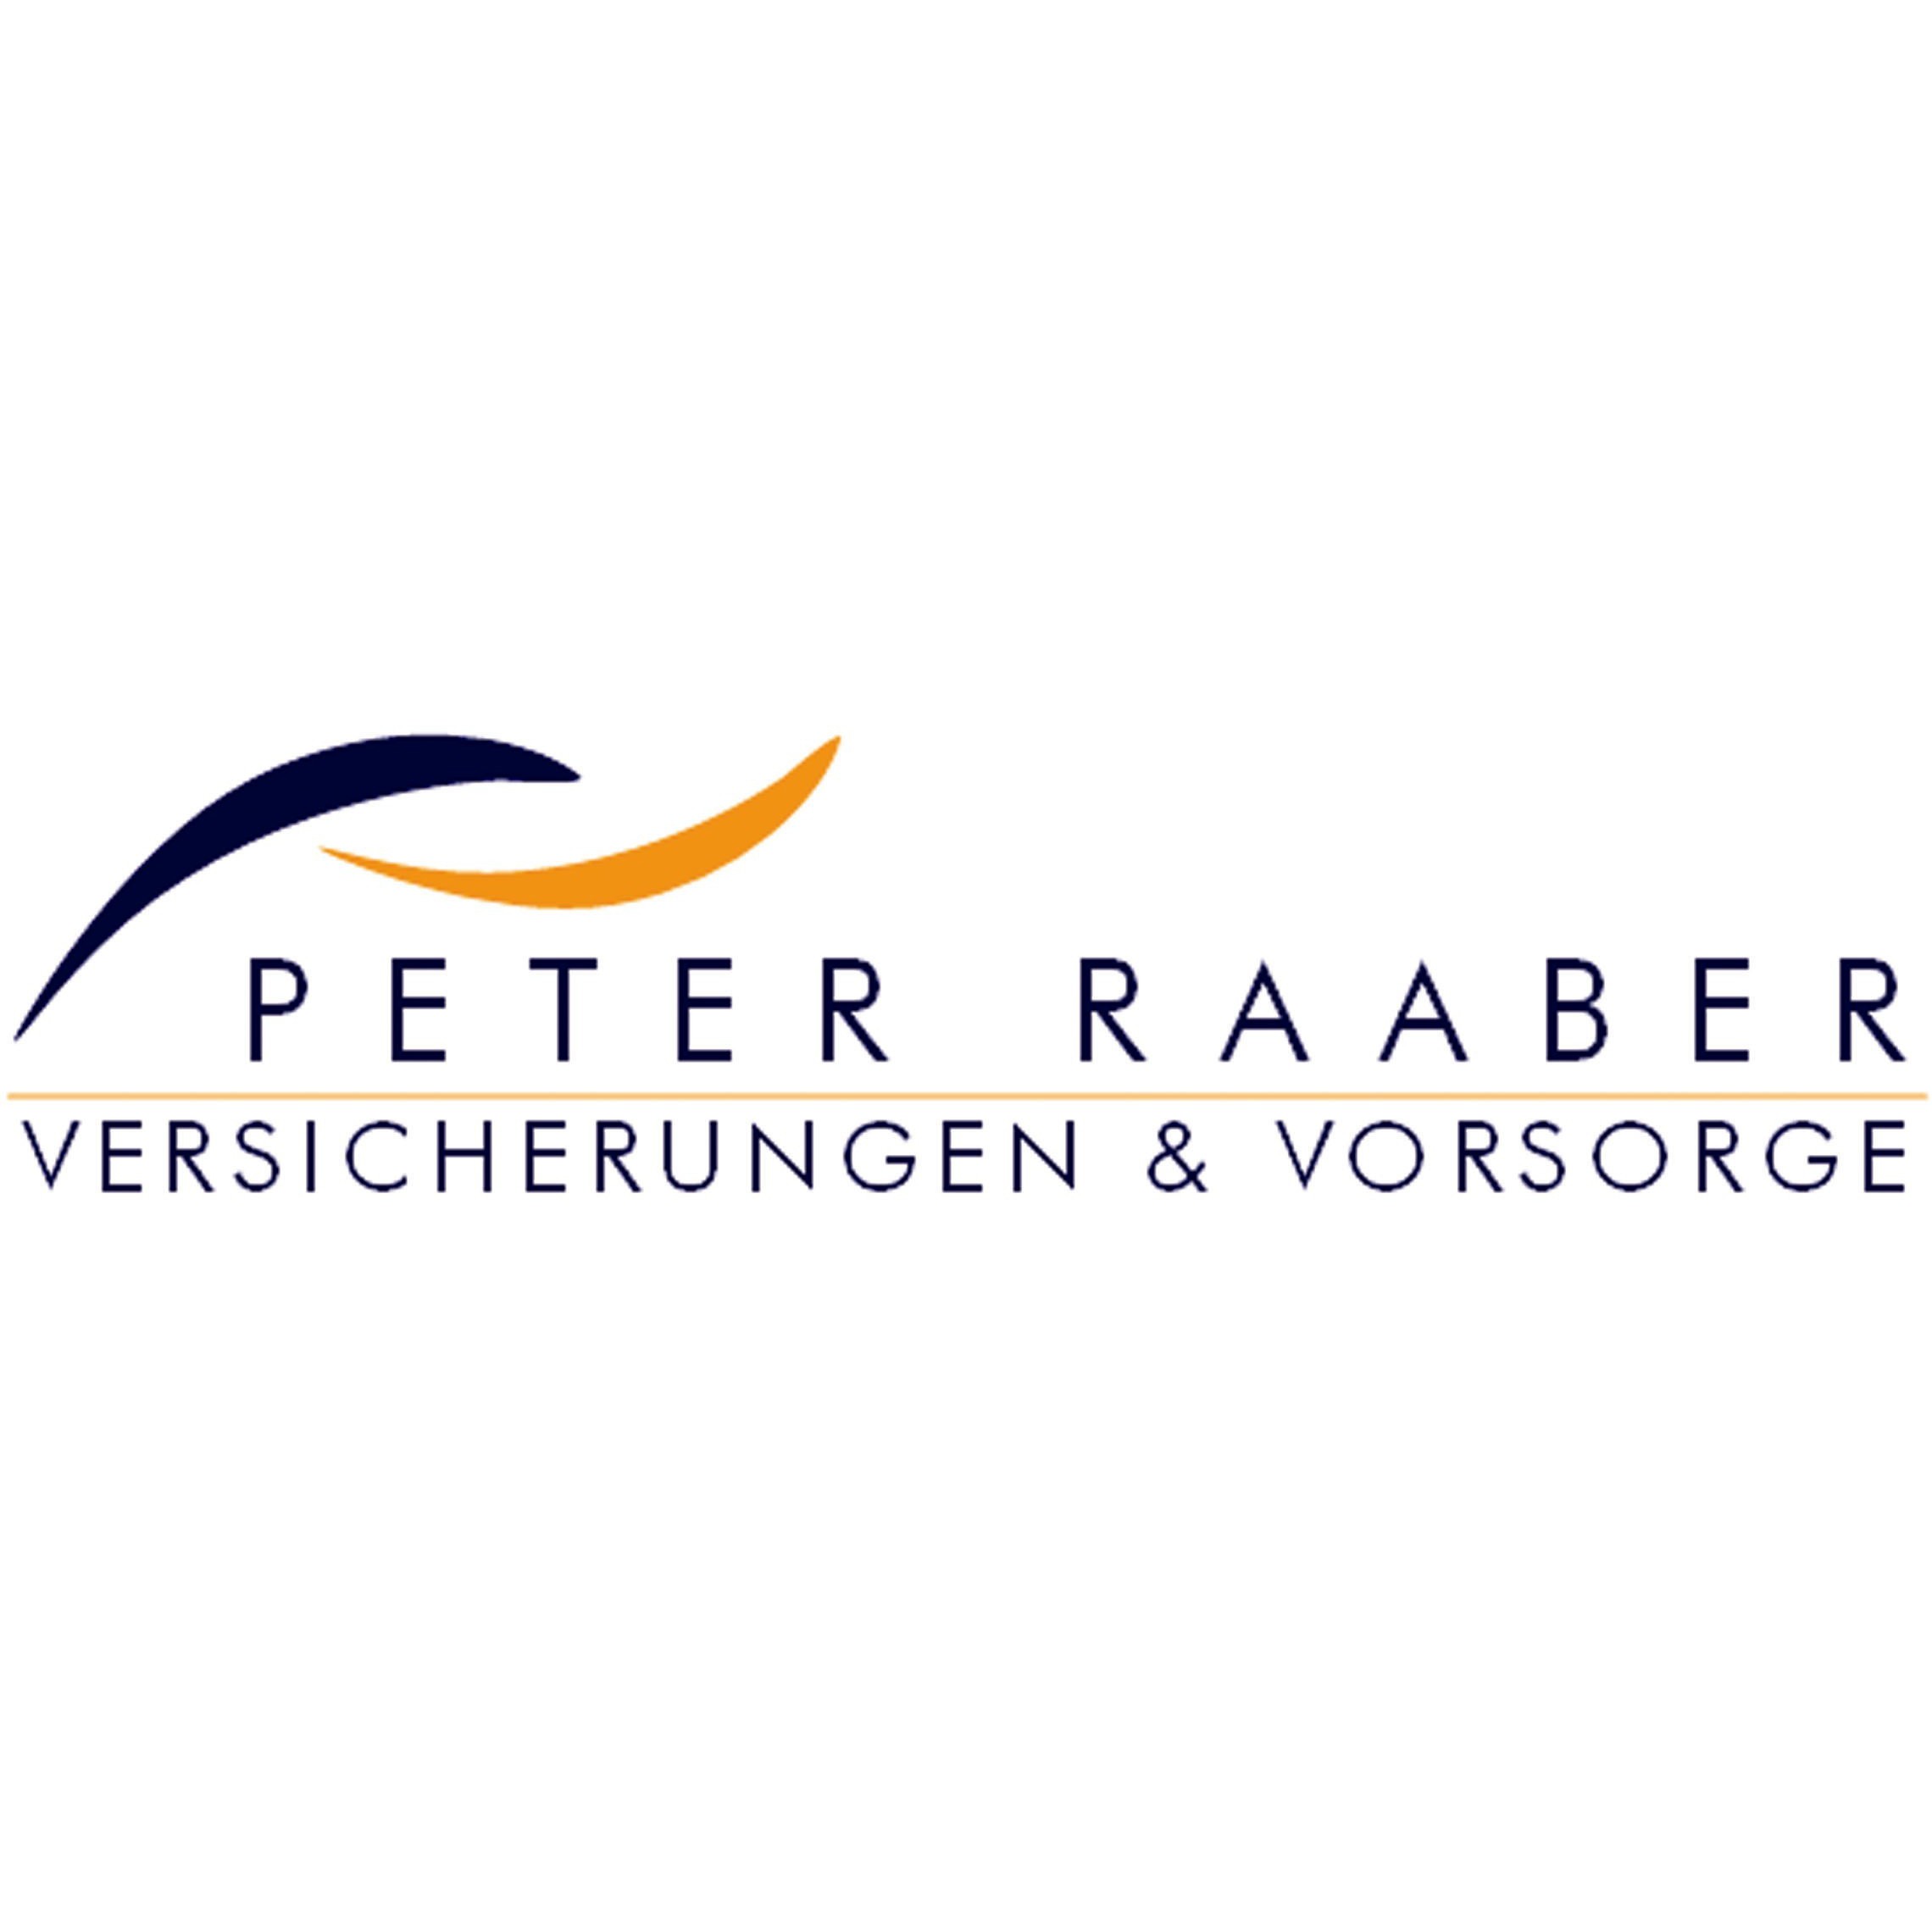 Peter Raaber Versicherungen & Vorsorge  